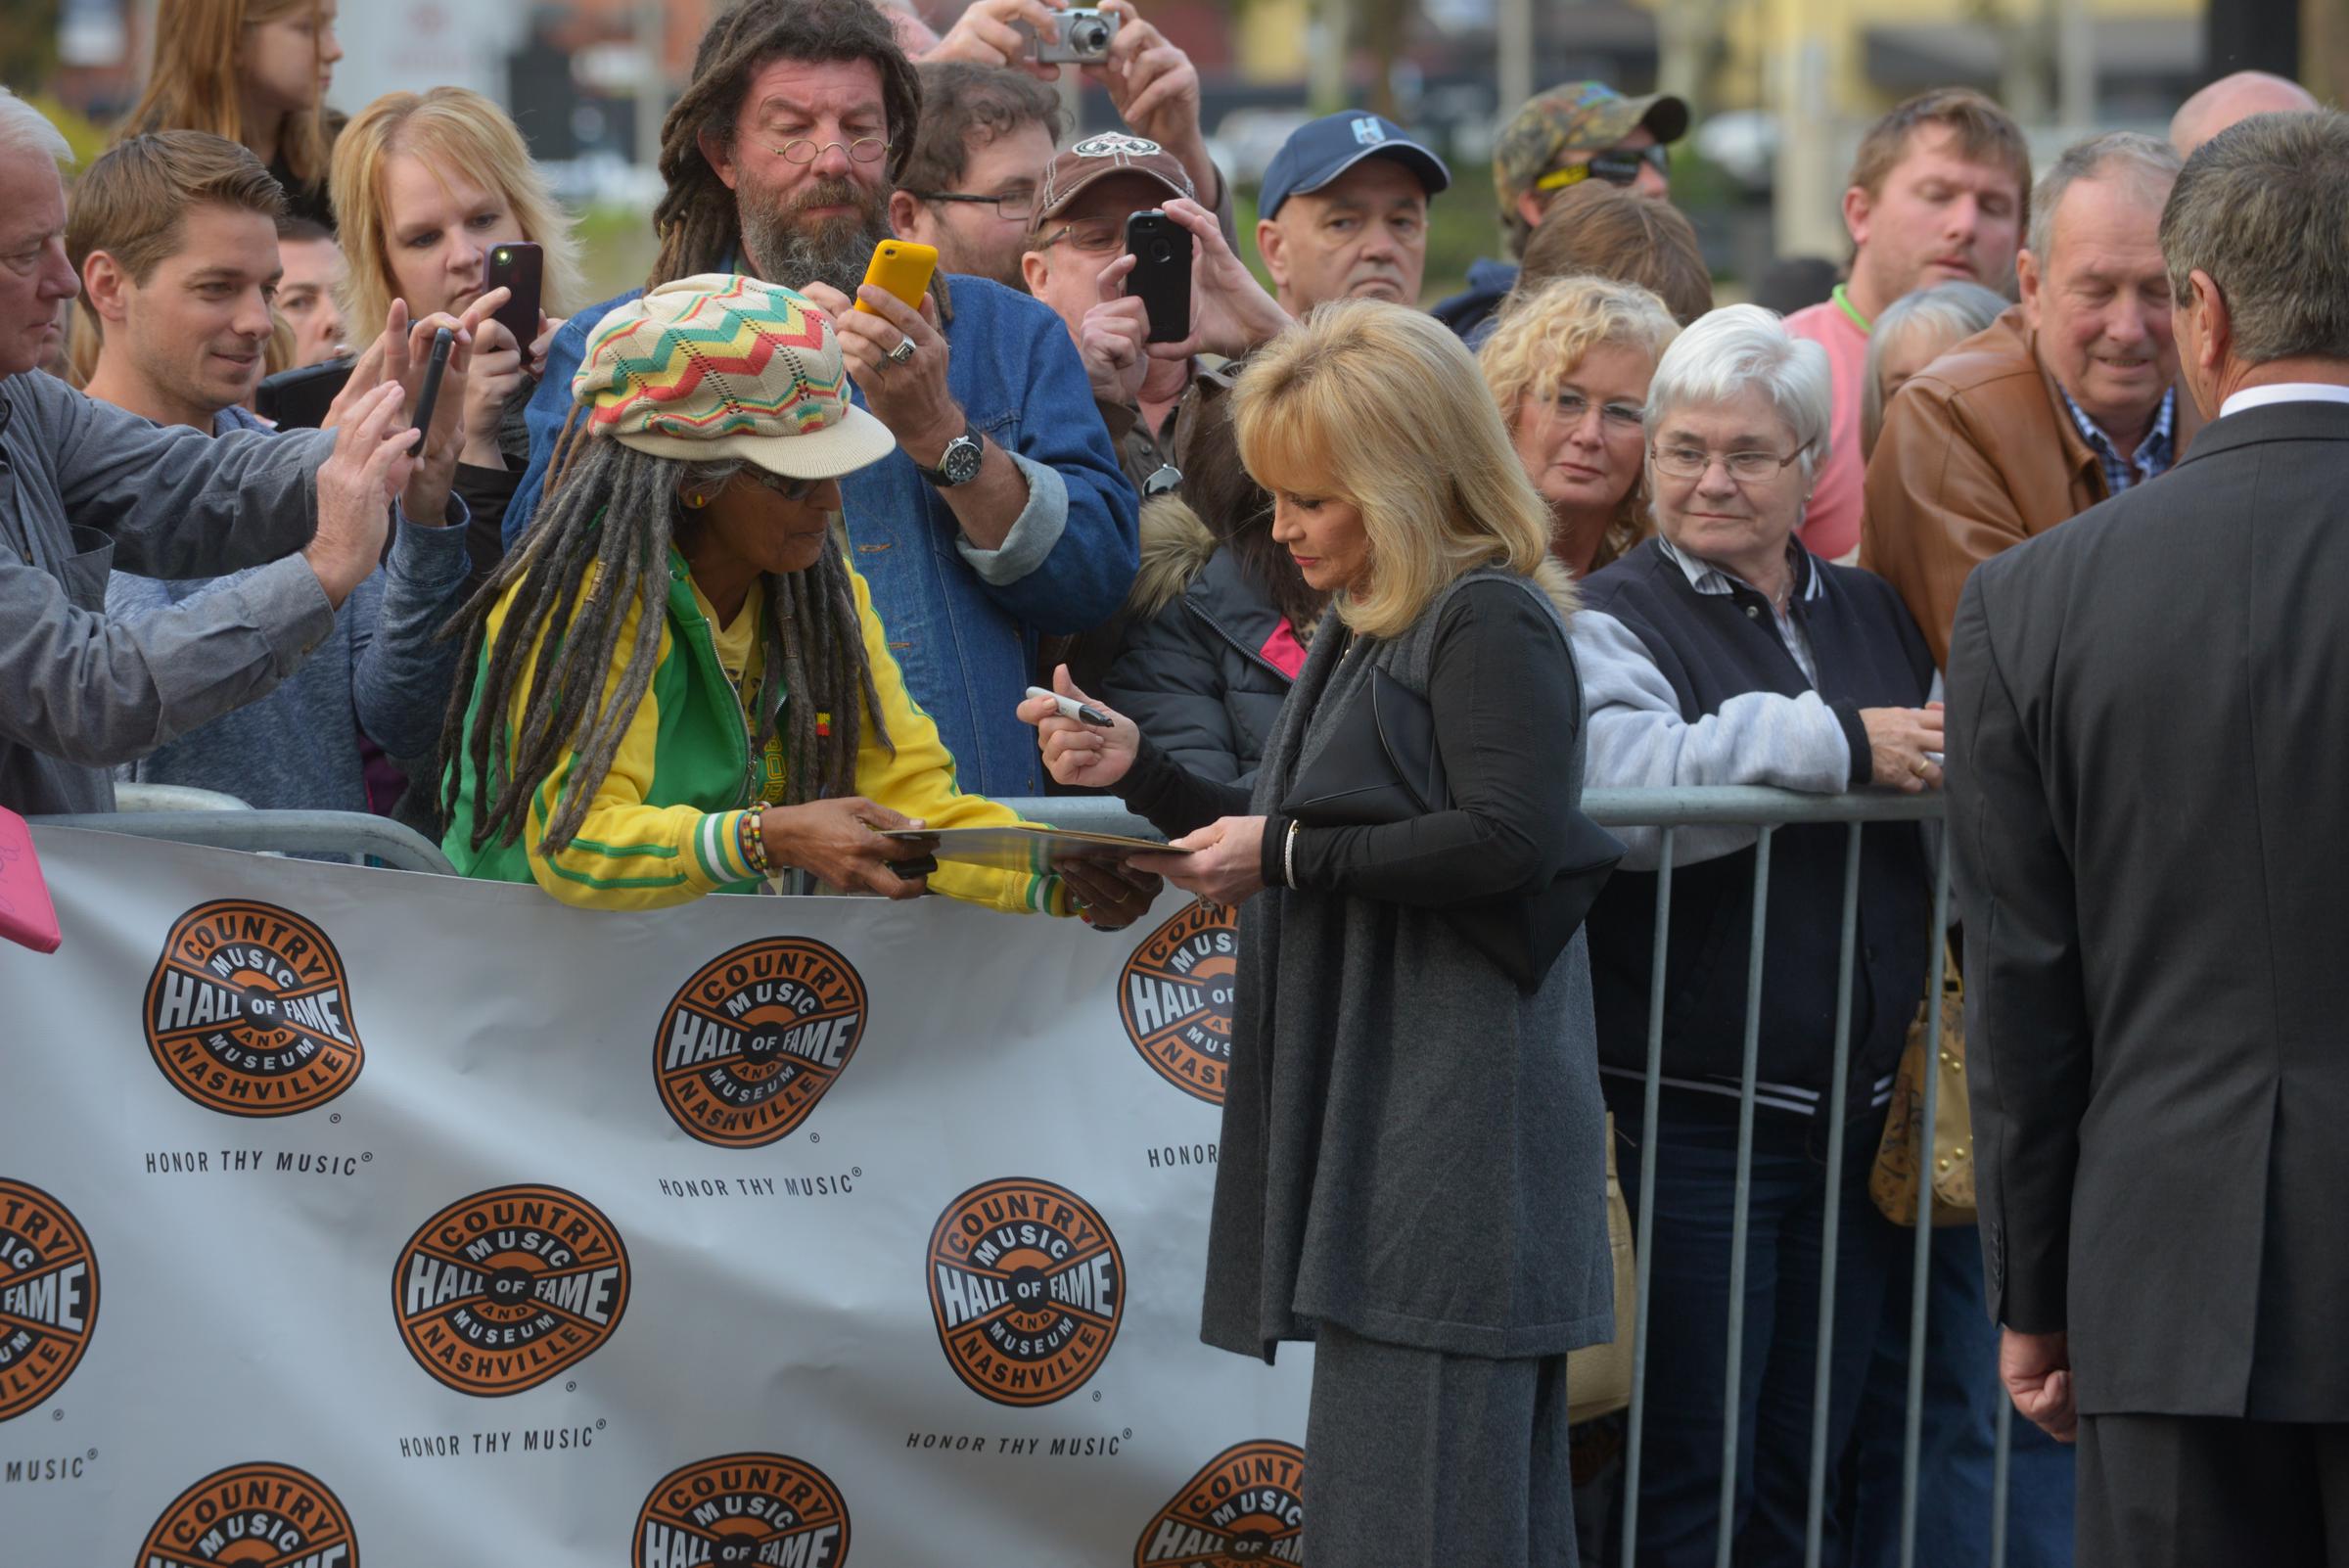 Barbara Mandrell llega y saluda a los fans en la ceremonia del Medallón del Salón de la Fama de la Música Country en Nashville, Tennessee, el 27 de octubre de 2013. | Fuente: Getty Images